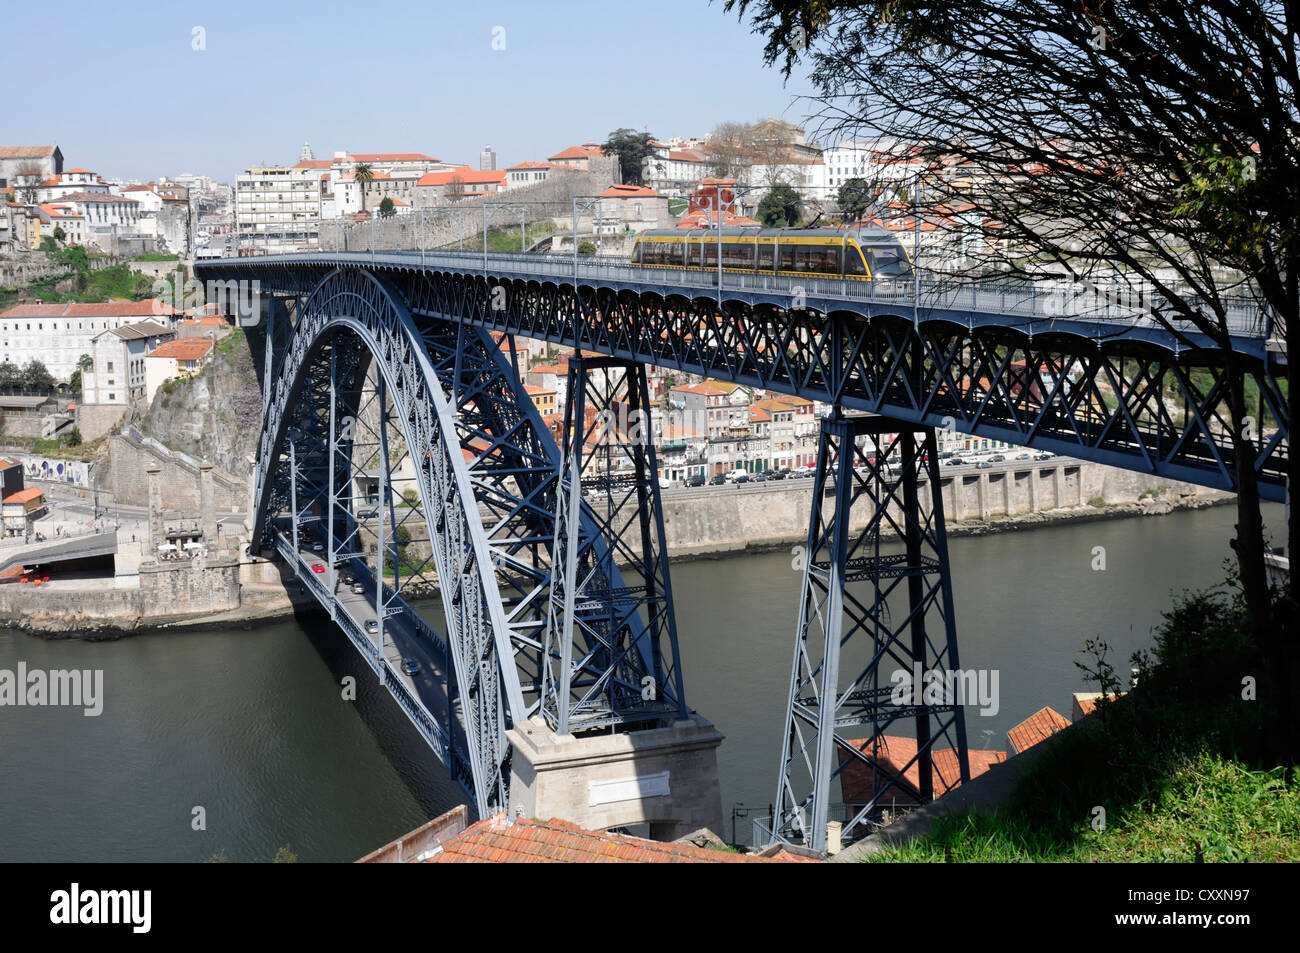 Ponte de D. Luis I, bridge over the Douro river, Porto, Northern Portugal, Portugal, Europe Stock Photo